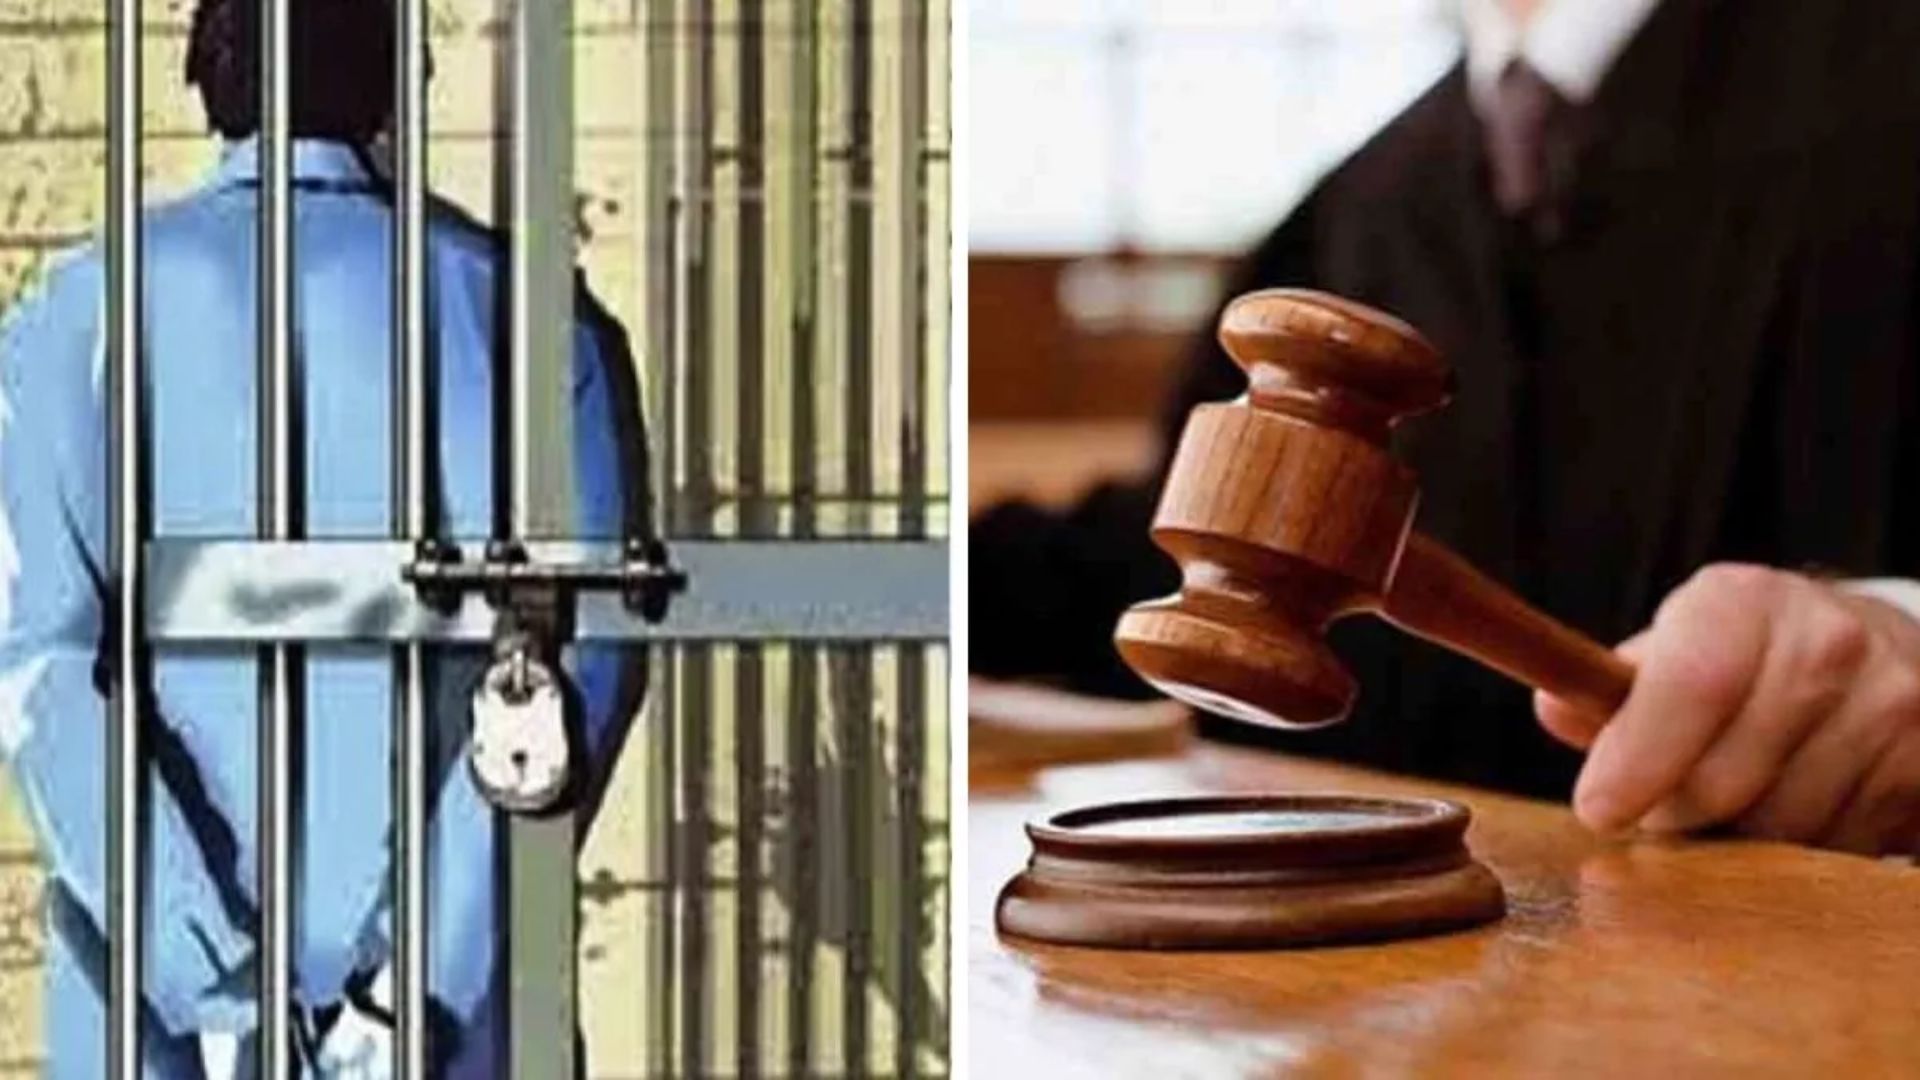 मुरादाबाद: मासूम से दुष्कर्म के दोषी को उम्रकैद की सजा, 25,000 रुपये जुर्माना